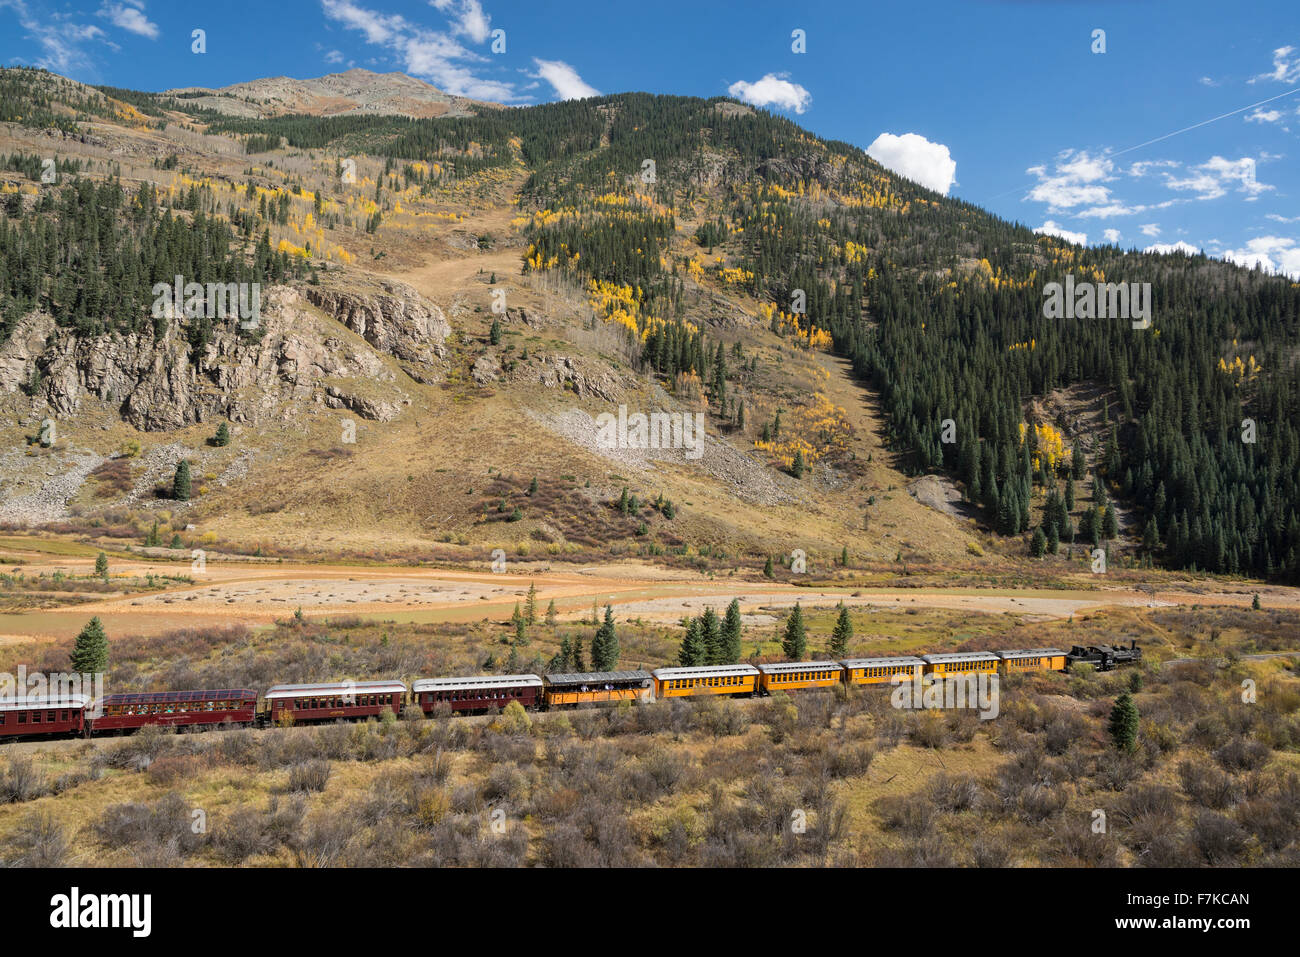 Durango & Silverton Narrow Gauge Railroad train à vapeur le long de la rivière Animas au sud-ouest du Colorado. Banque D'Images